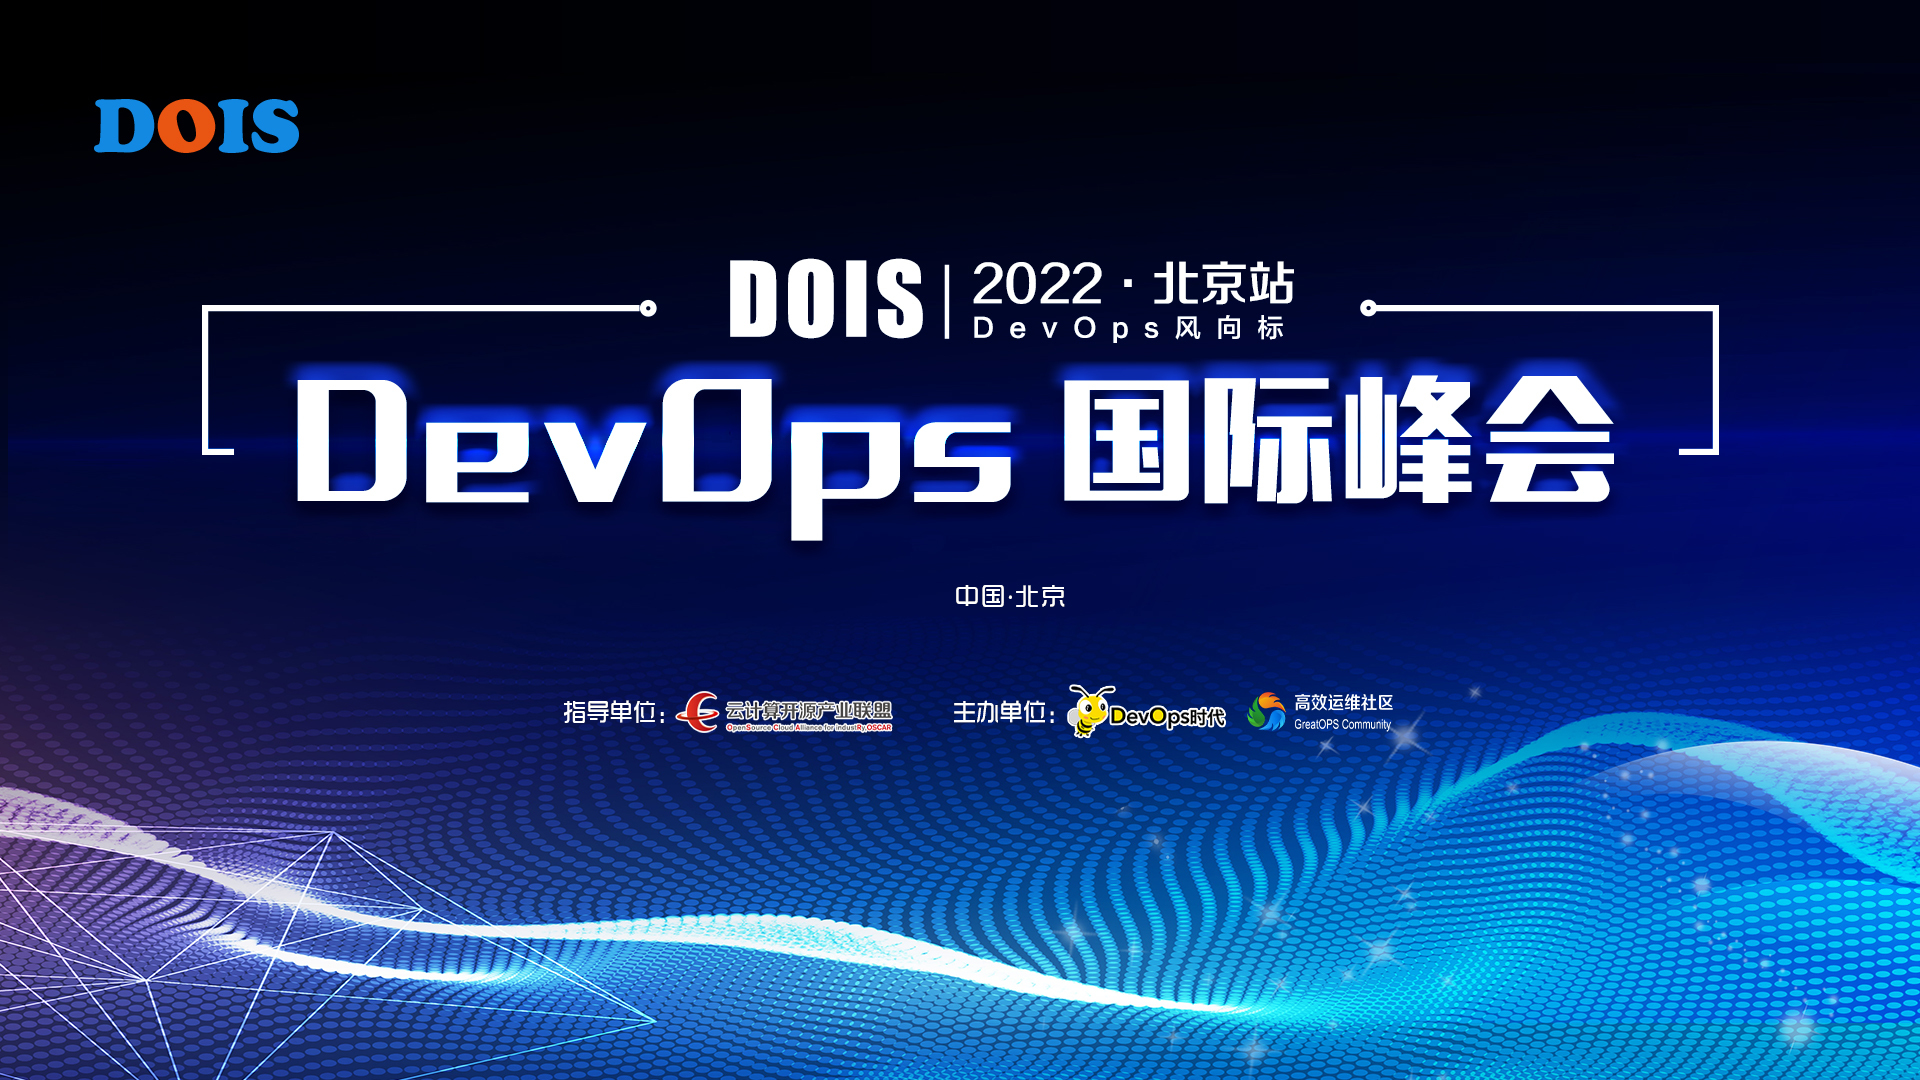 DevOps 国际峰会 2022·北京站（DOIS)